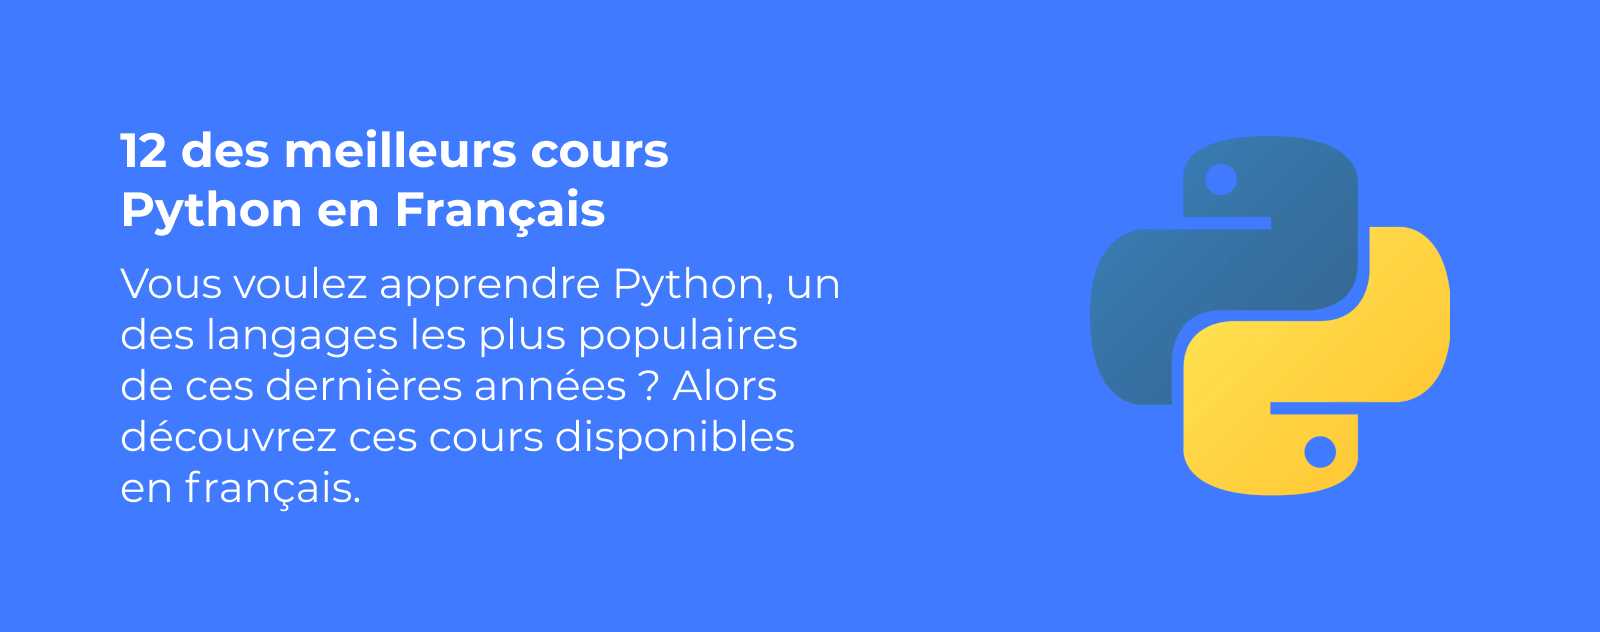 12 des meilleurs cours Python en Français